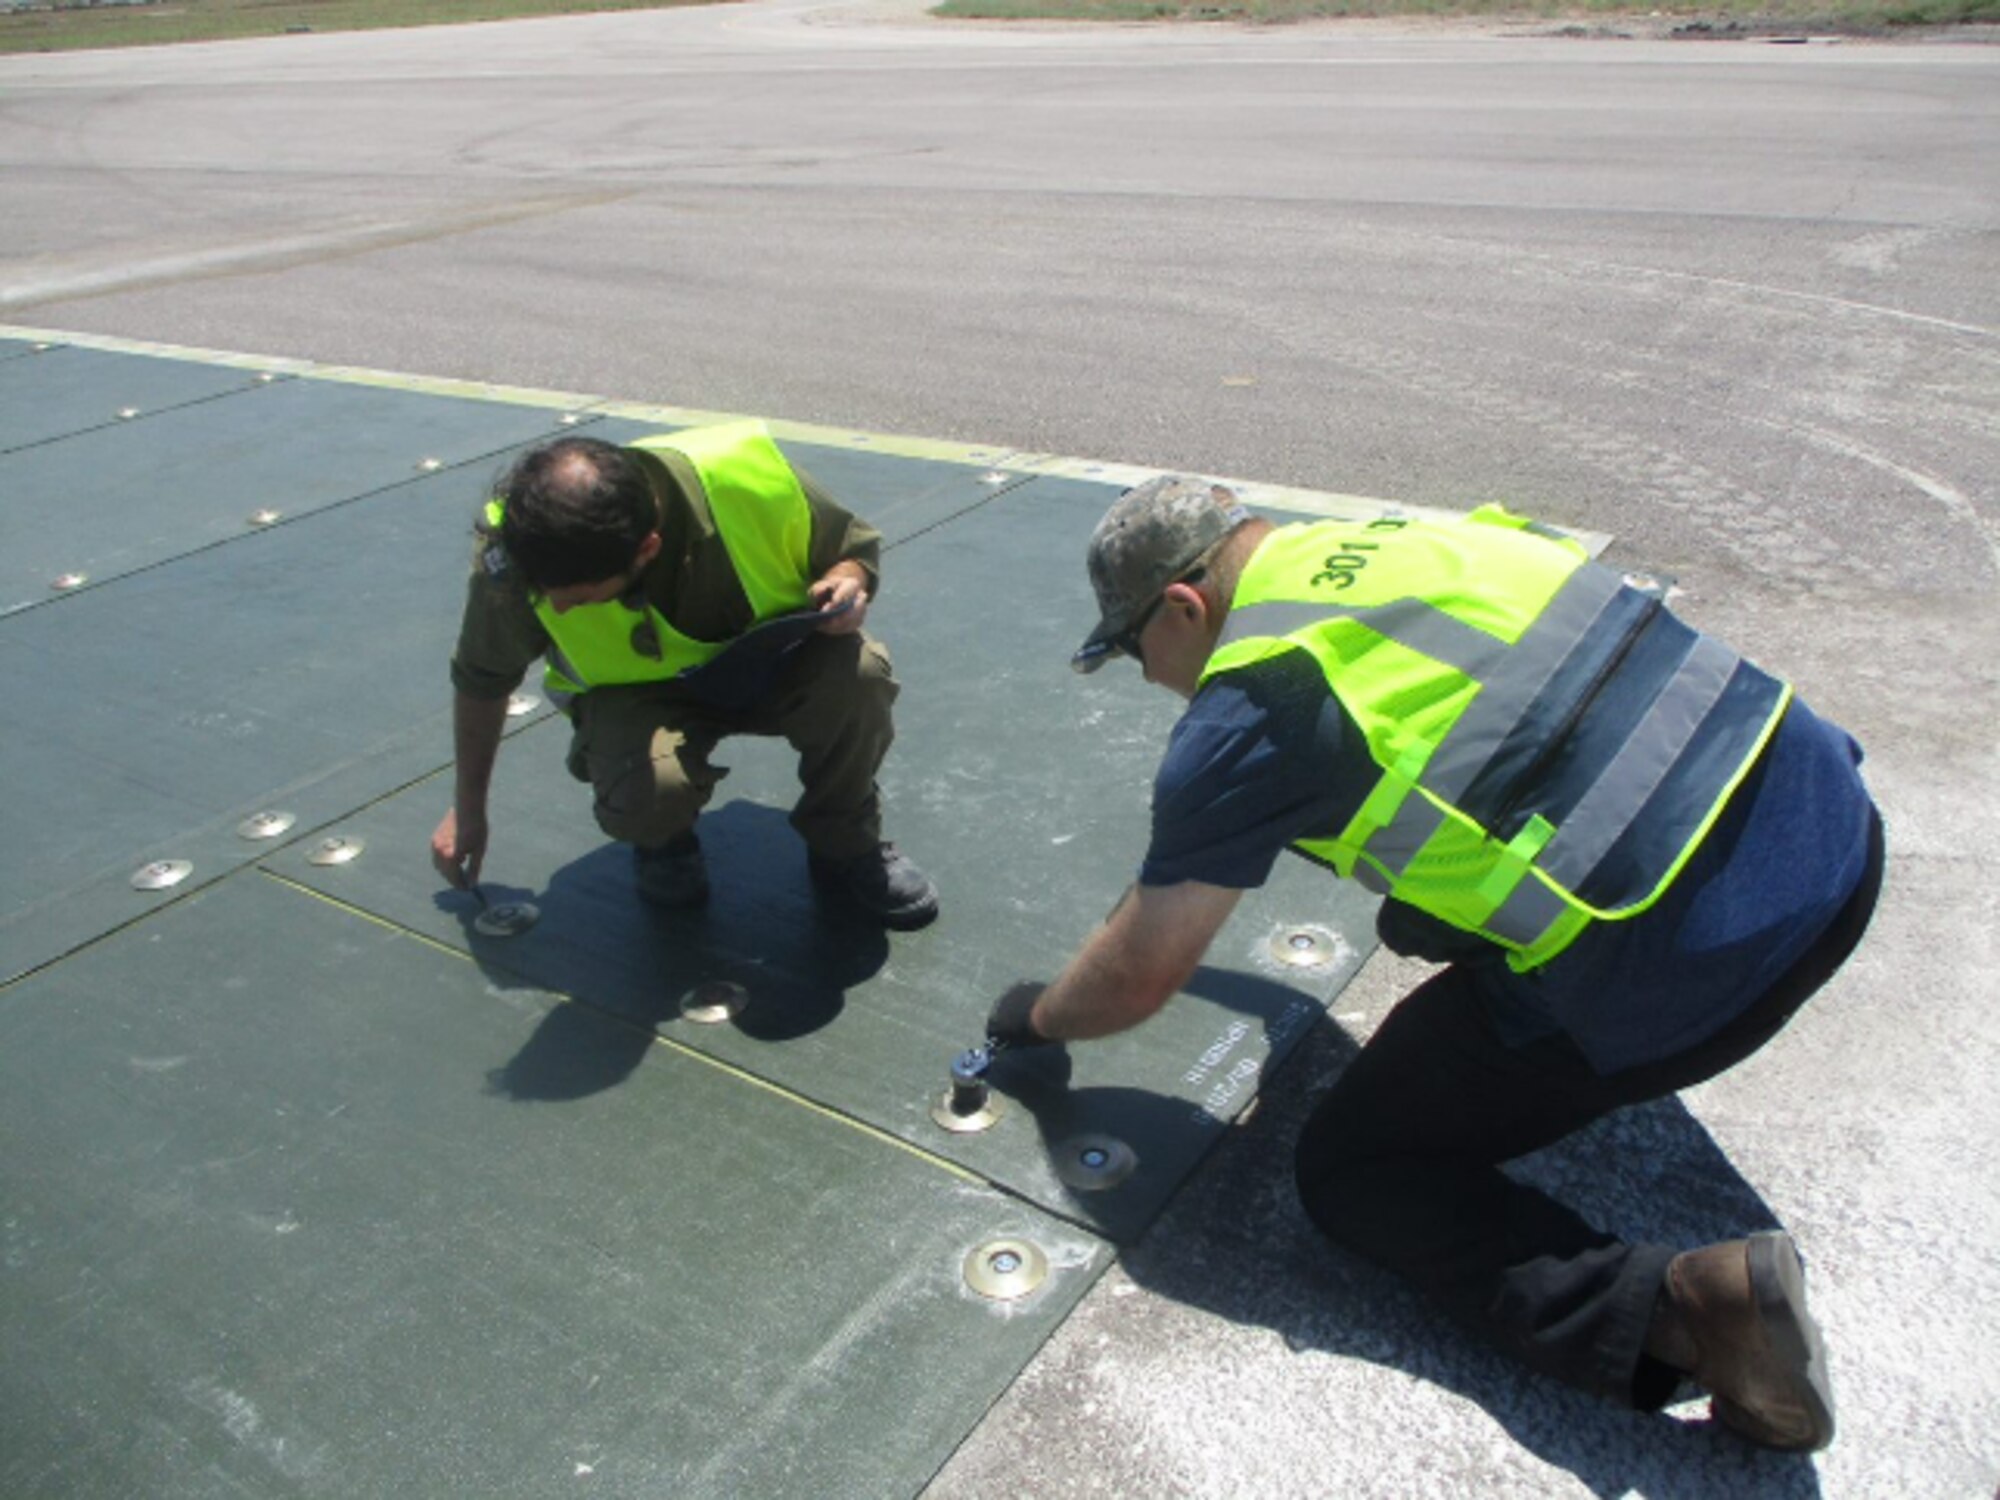 Engineers repairing a runway